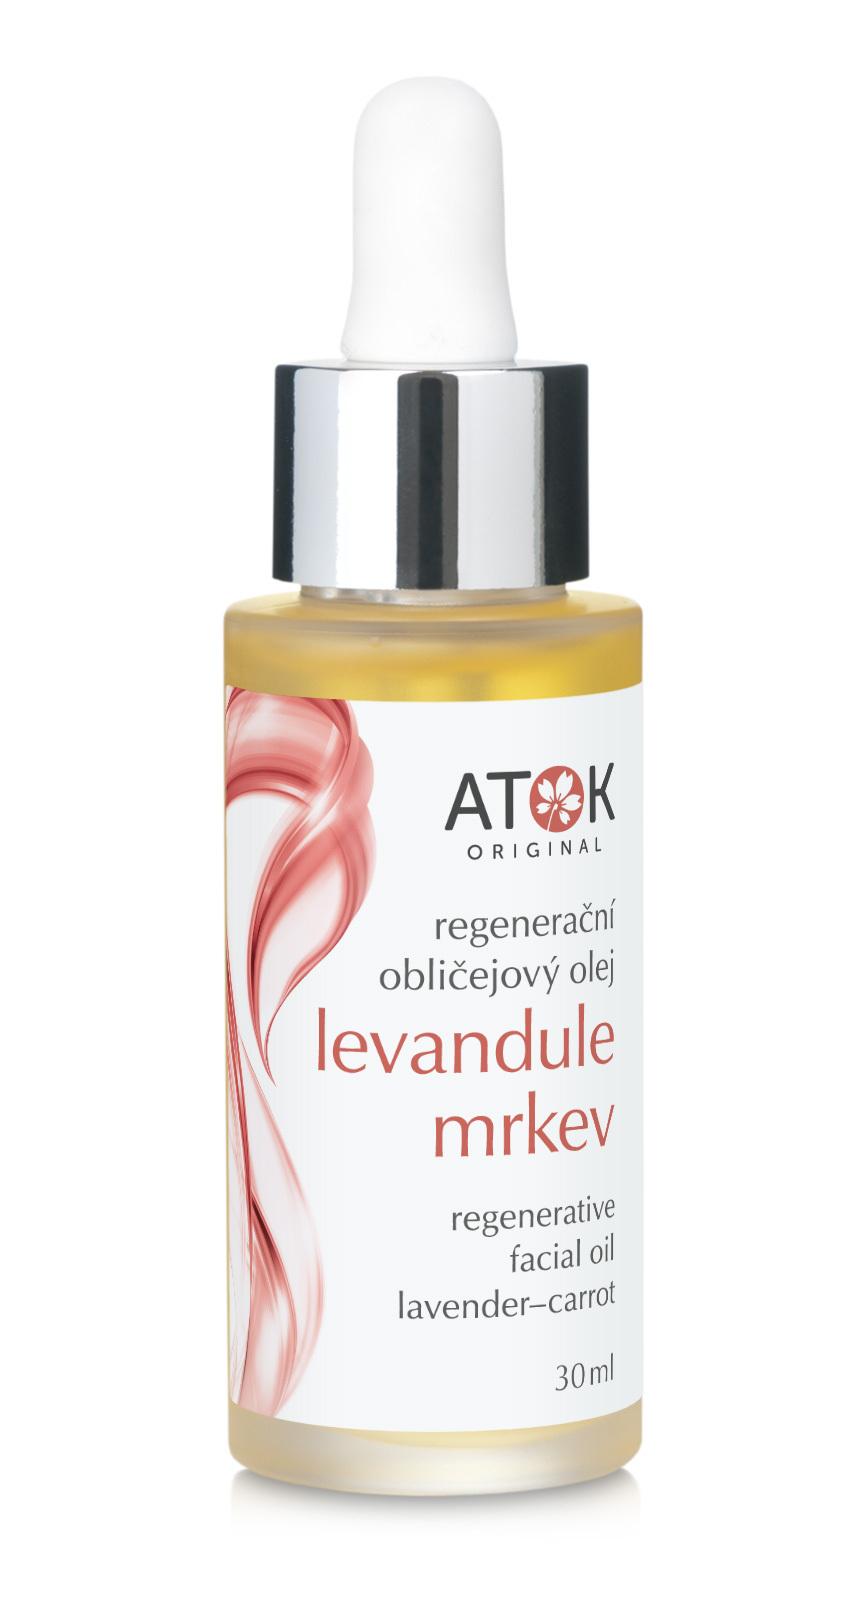 Regeneračný pleťový olej Levanduľa-mrkva - Original ATOK Obsah: 30 ml